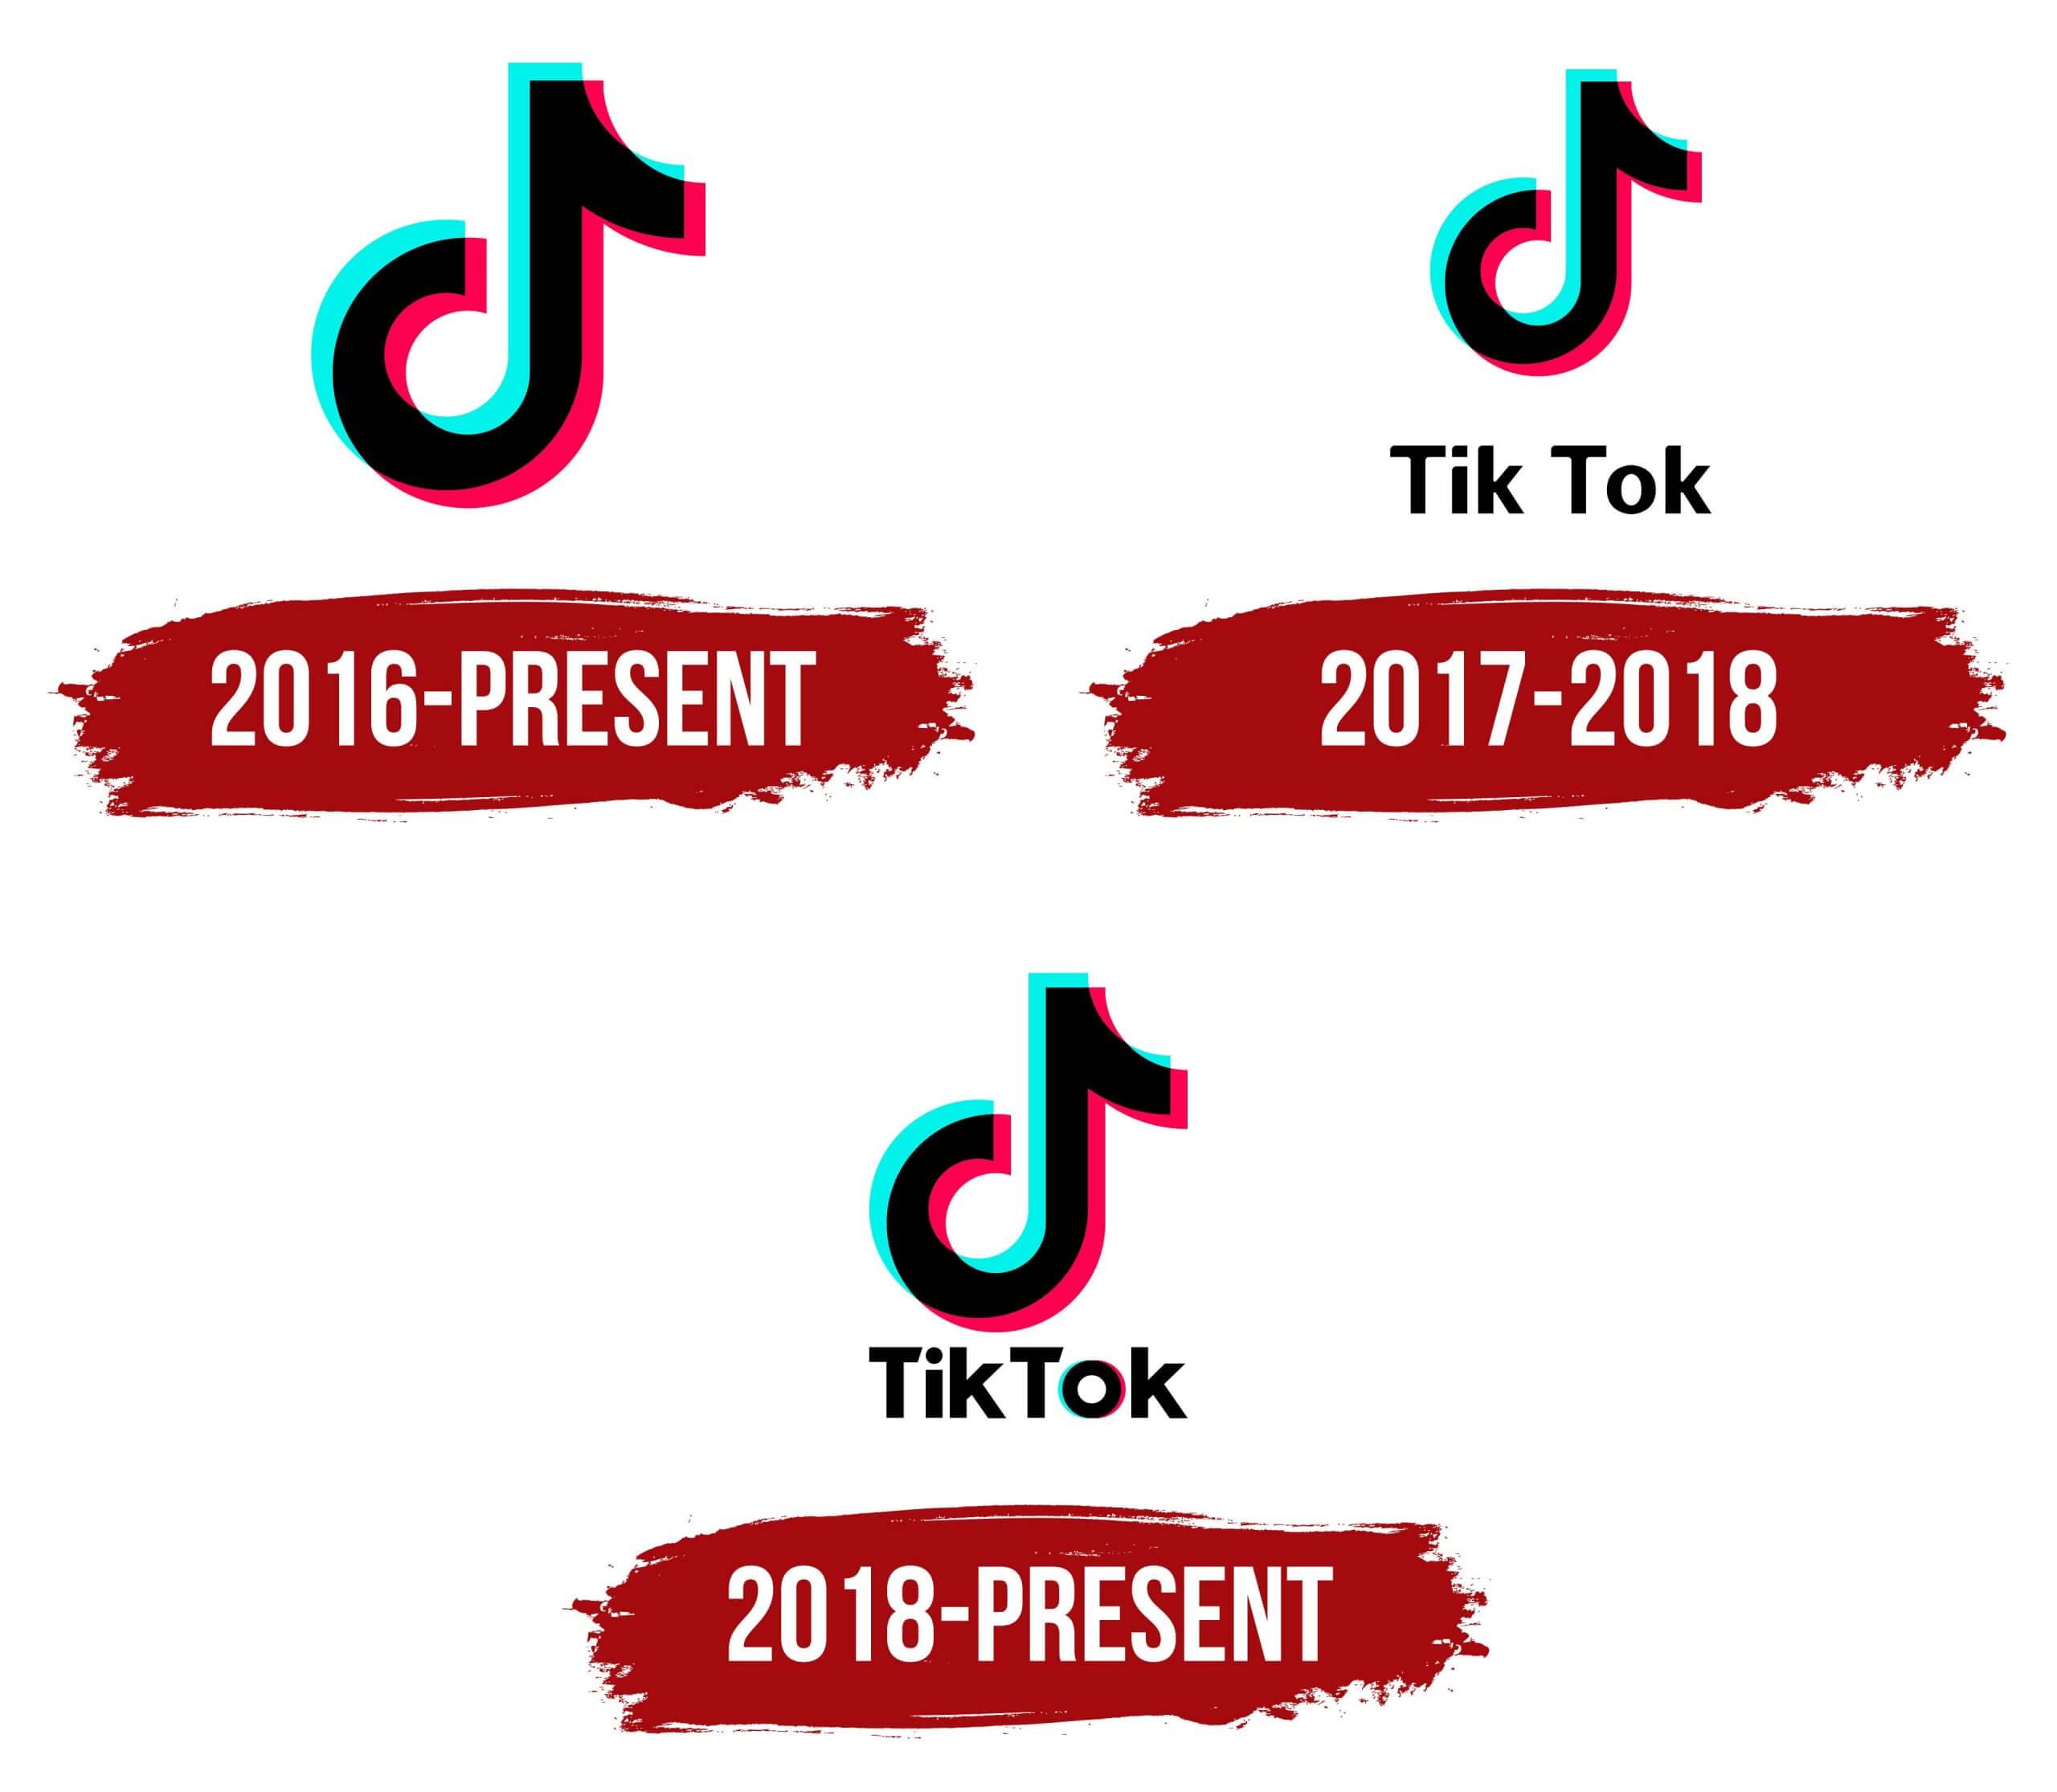 Chỉ mới ra mắt được 5 năm nhưng TikTok đã thay đổi cuộc chơi mạng xã hội